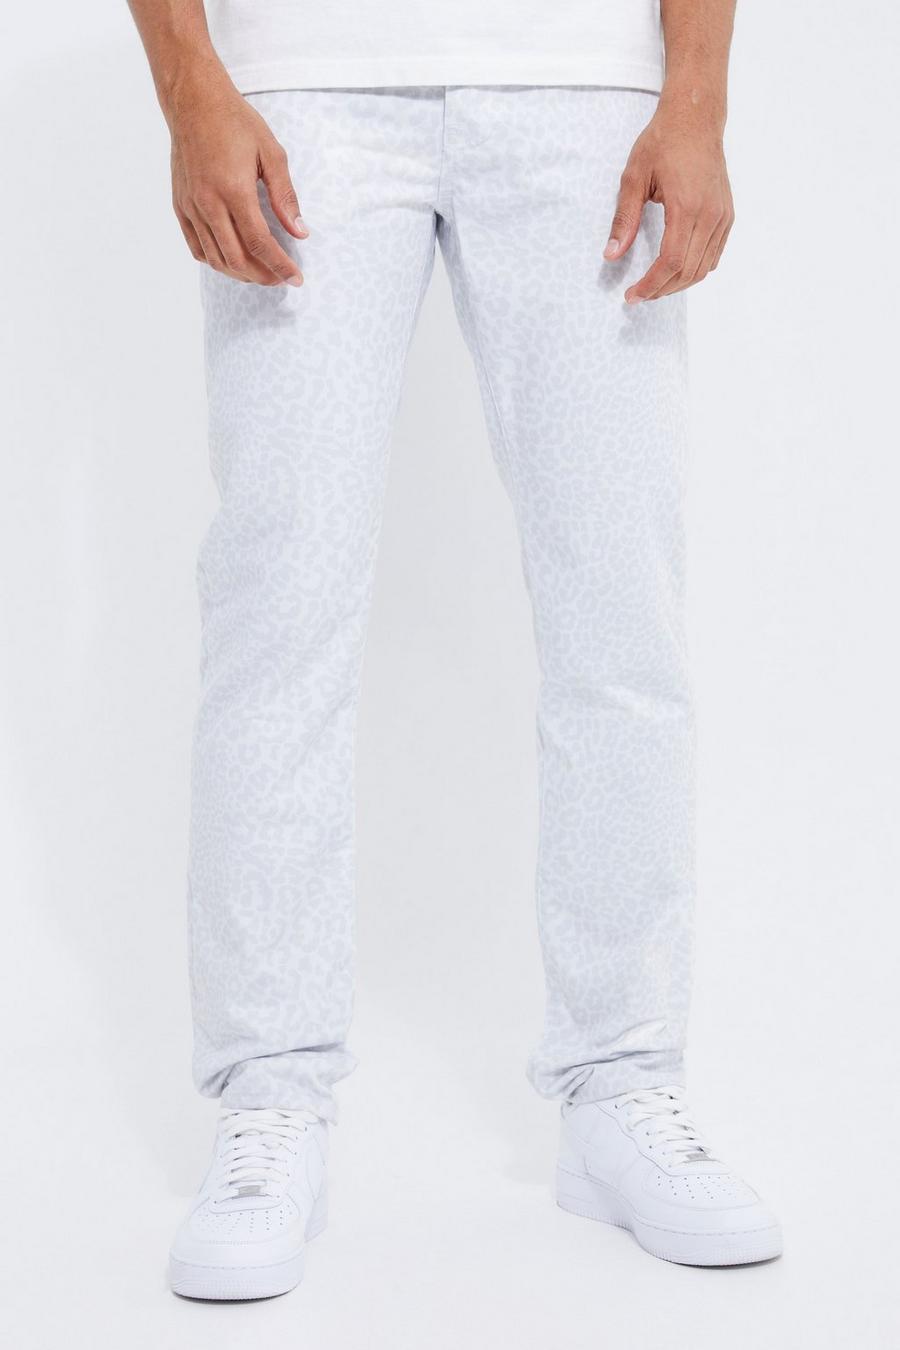 אפור grigio ג'ינס בגזרה ישרה עם הדפס חיות חוזר, לגברים גבוהים